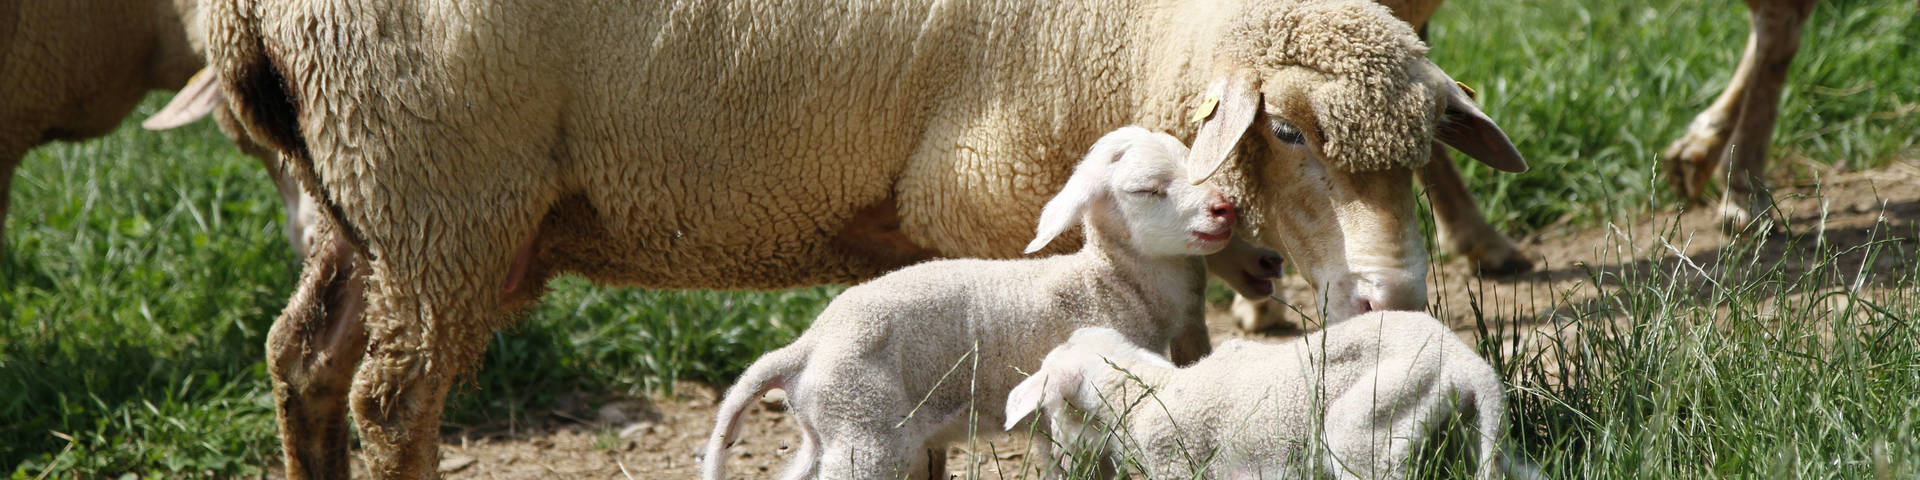 Die Weizer Schafbauern produzieren eine Vielfalt an Schaf-Produkten